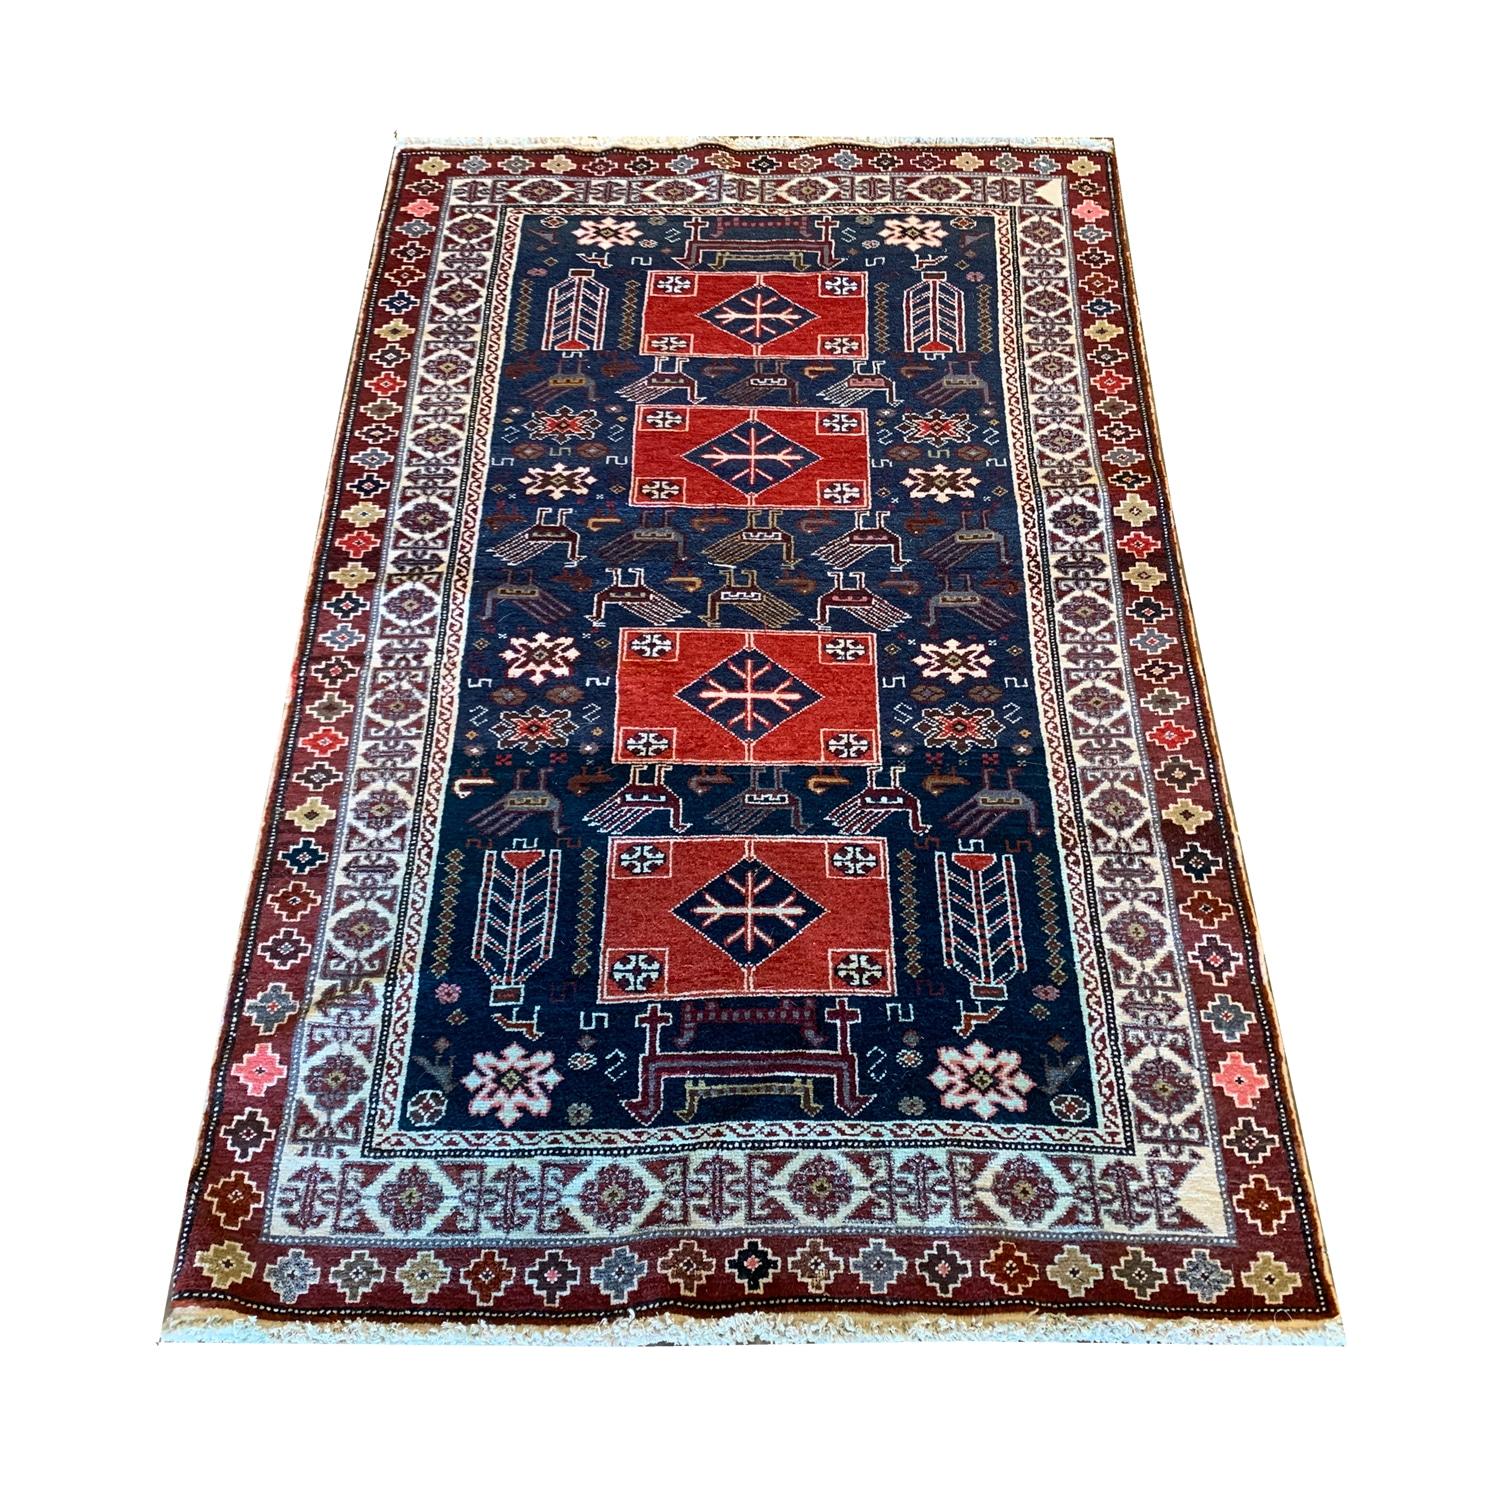 Wir stellen Ihnen unseren exquisiten antiken Sammlerteppich vor, der aus Aserbaidschan im späten 19. Jahrhundert, um 1880, stammt. Dieser Vintage-Teppich blickt auf eine reiche Geschichte zurück und wurde in sorgfältiger Handarbeit von erfahrenen